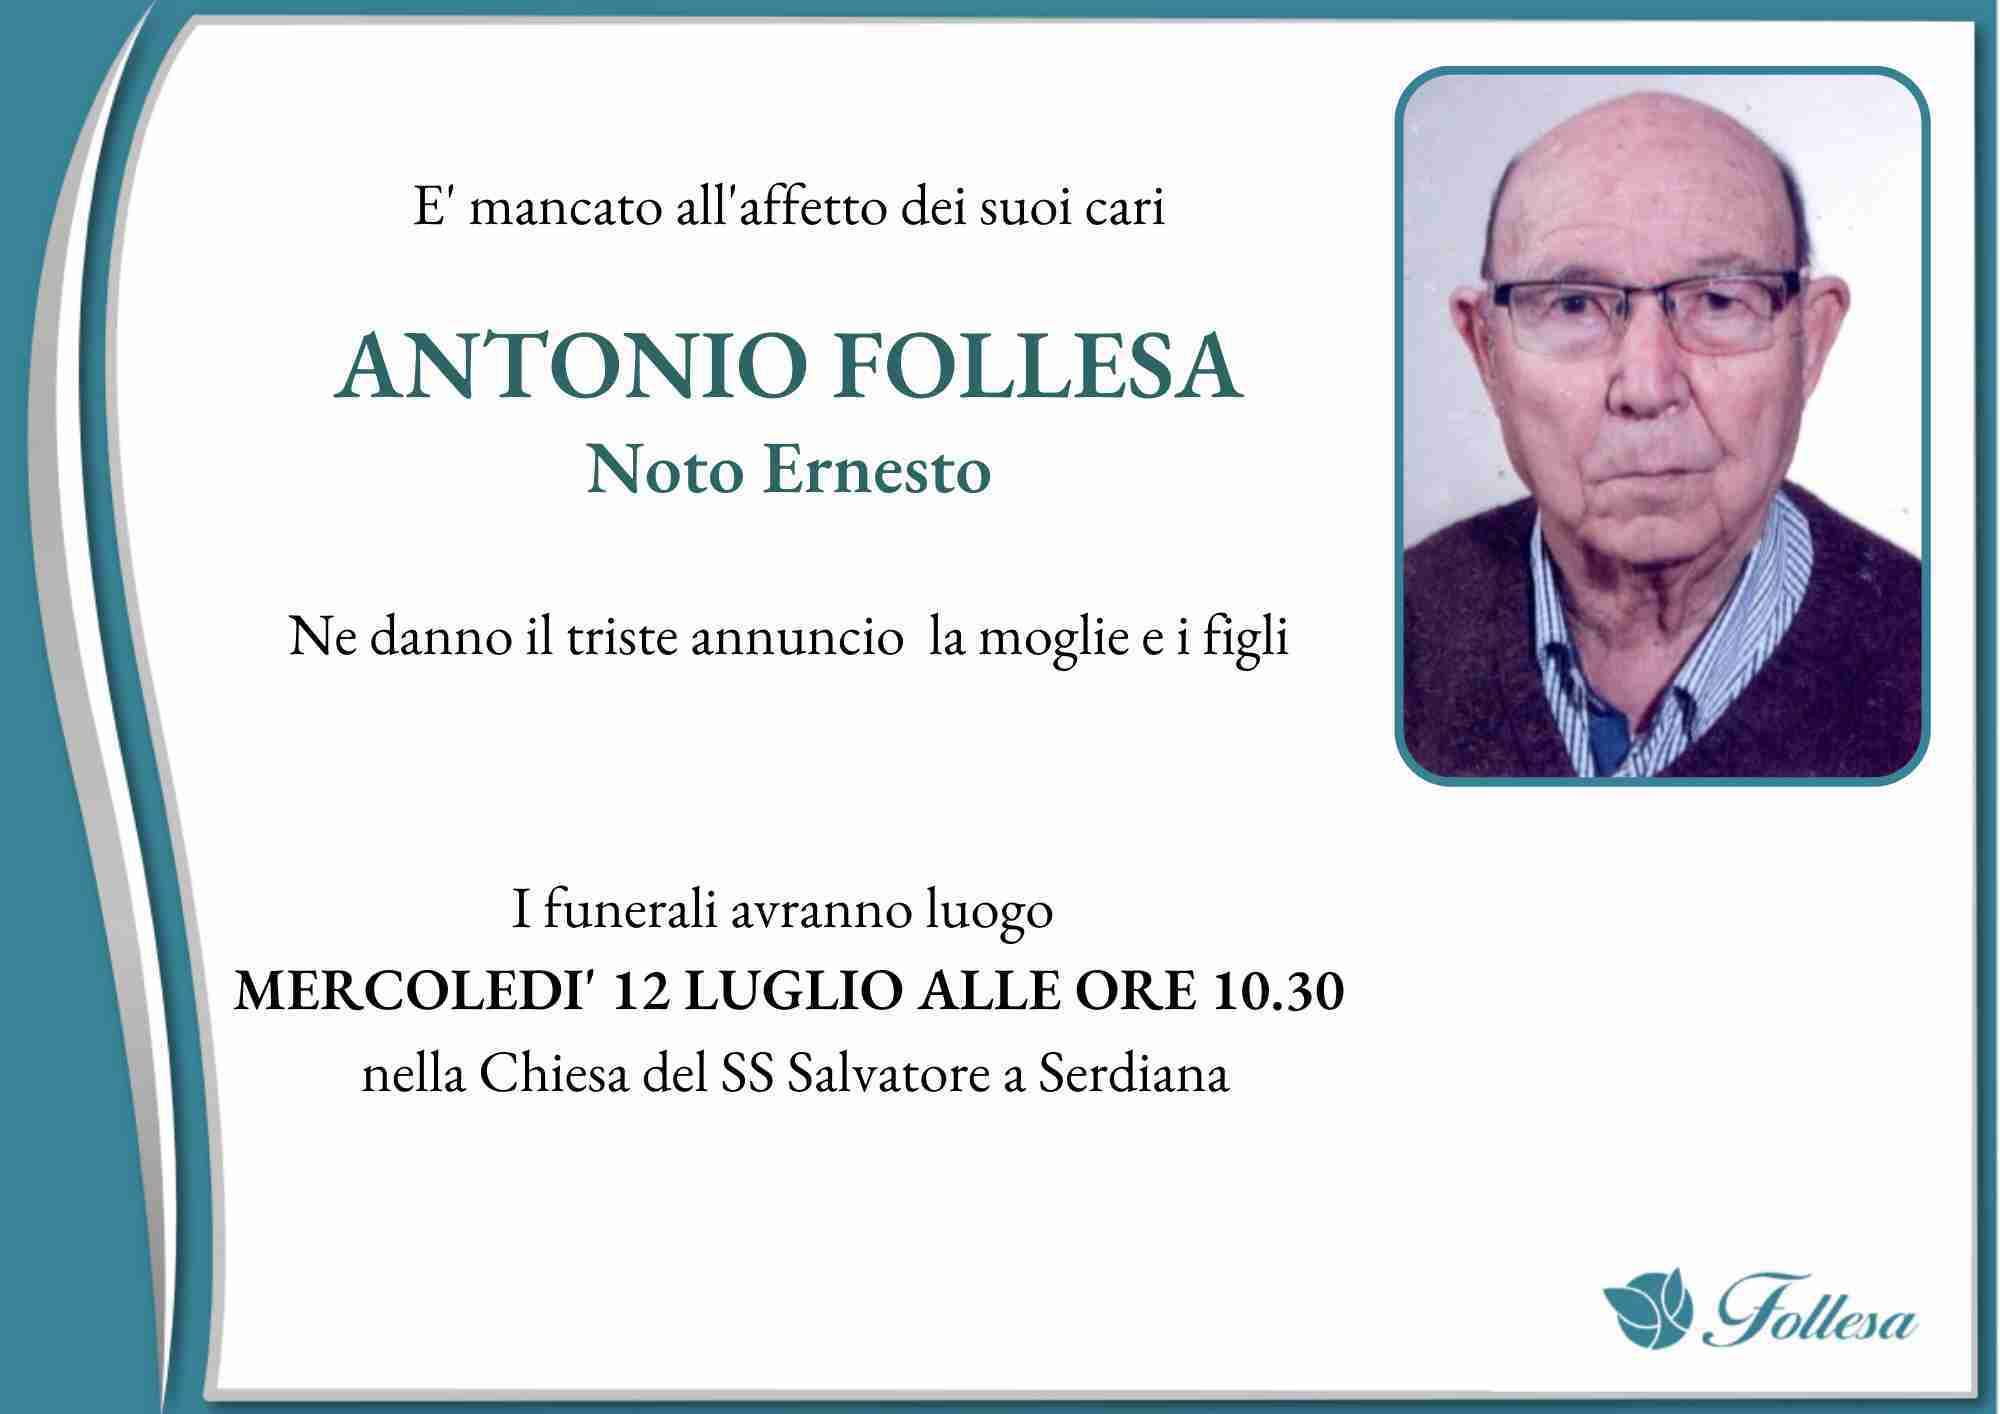 Antonio Follesa